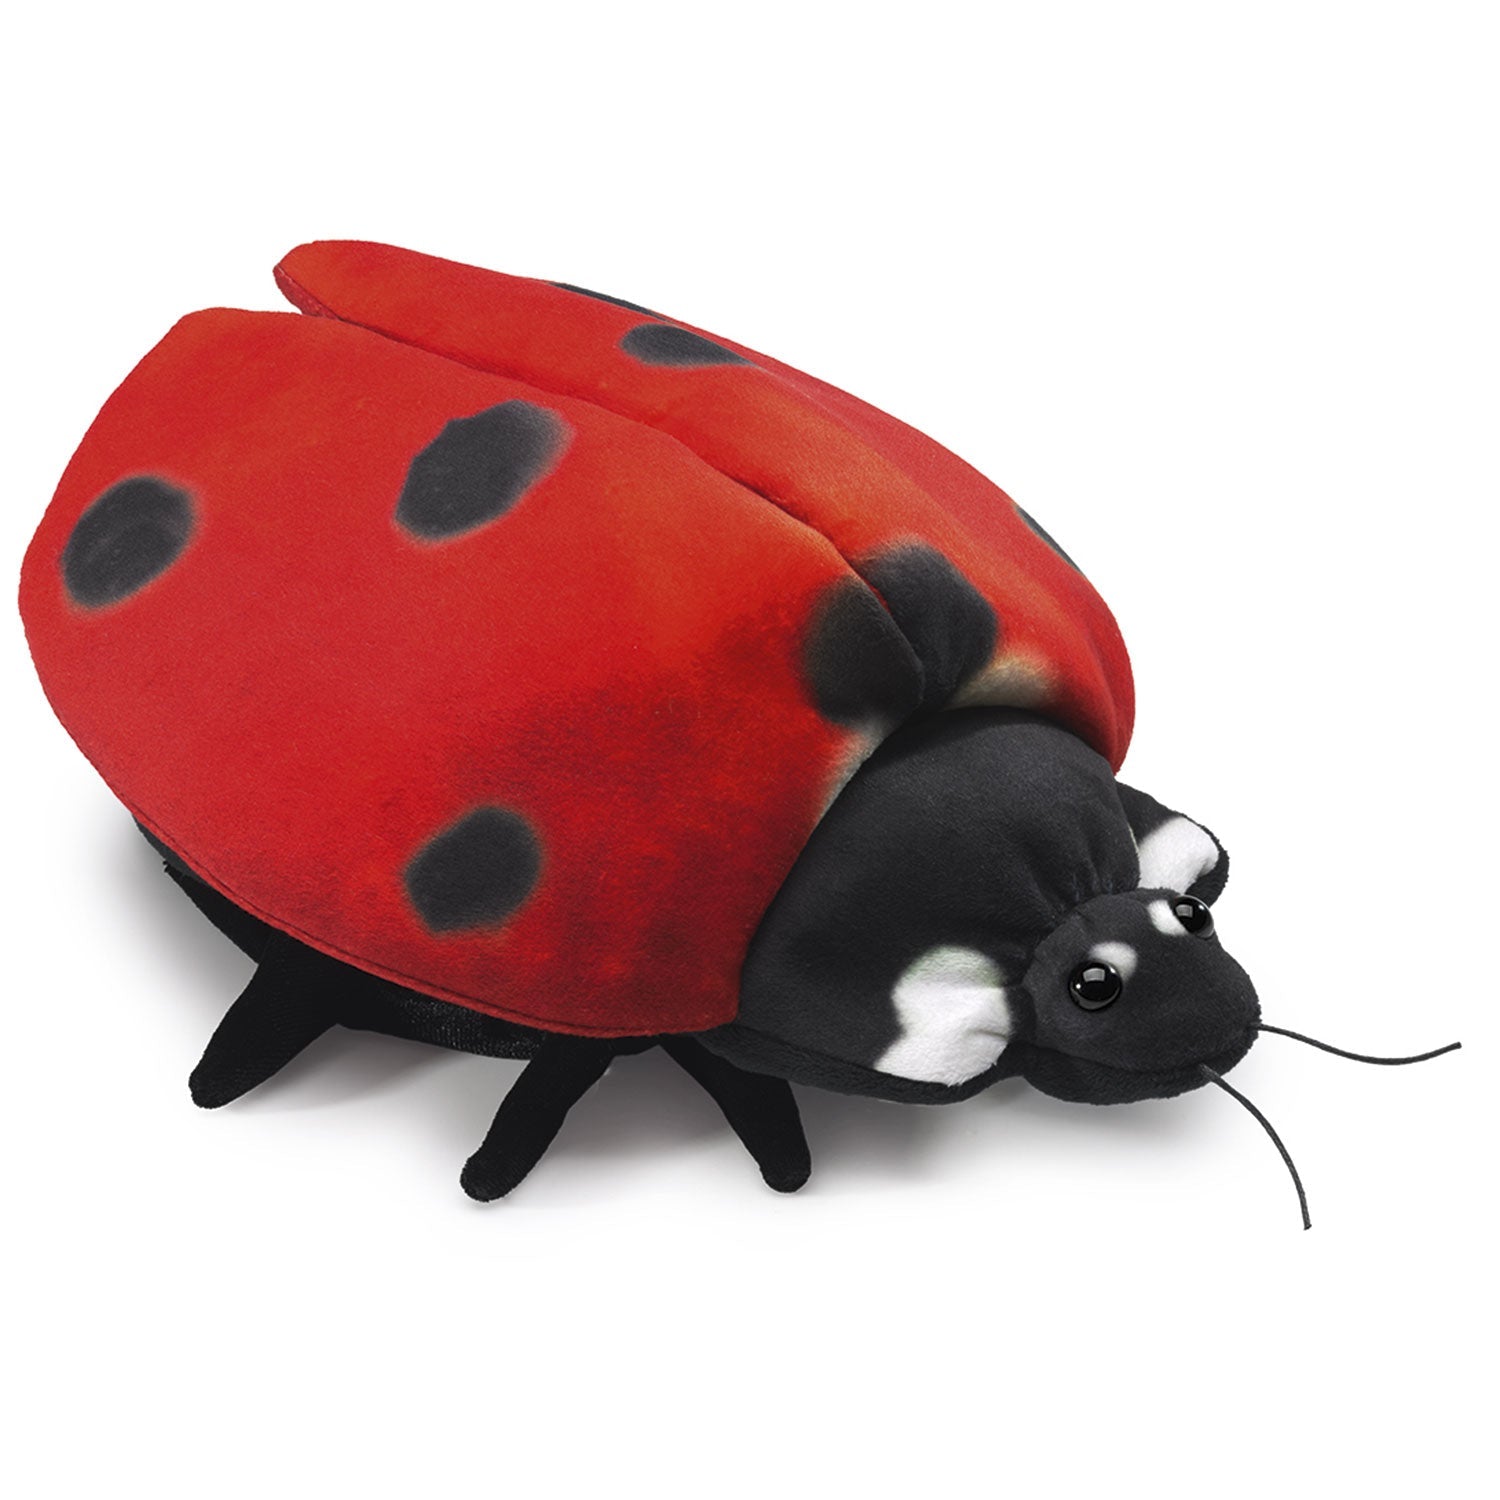 Folkmanis - Handpop - Ladybug Life Cycle - Playlaan